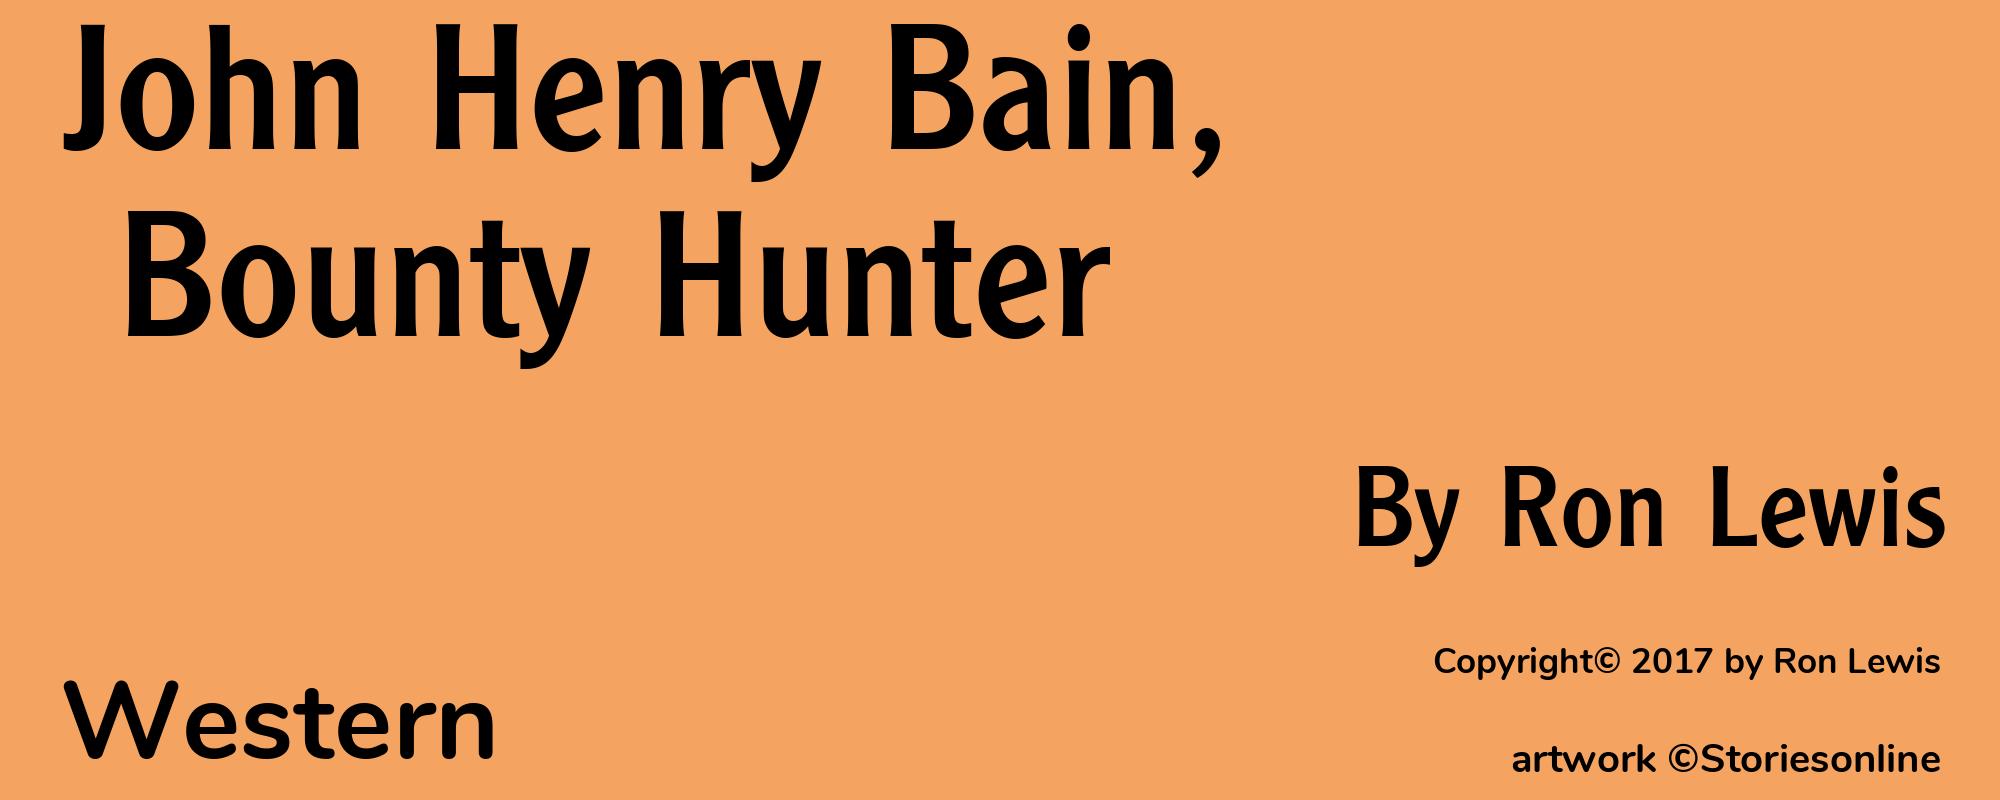 John Henry Bain, Bounty Hunter - Cover